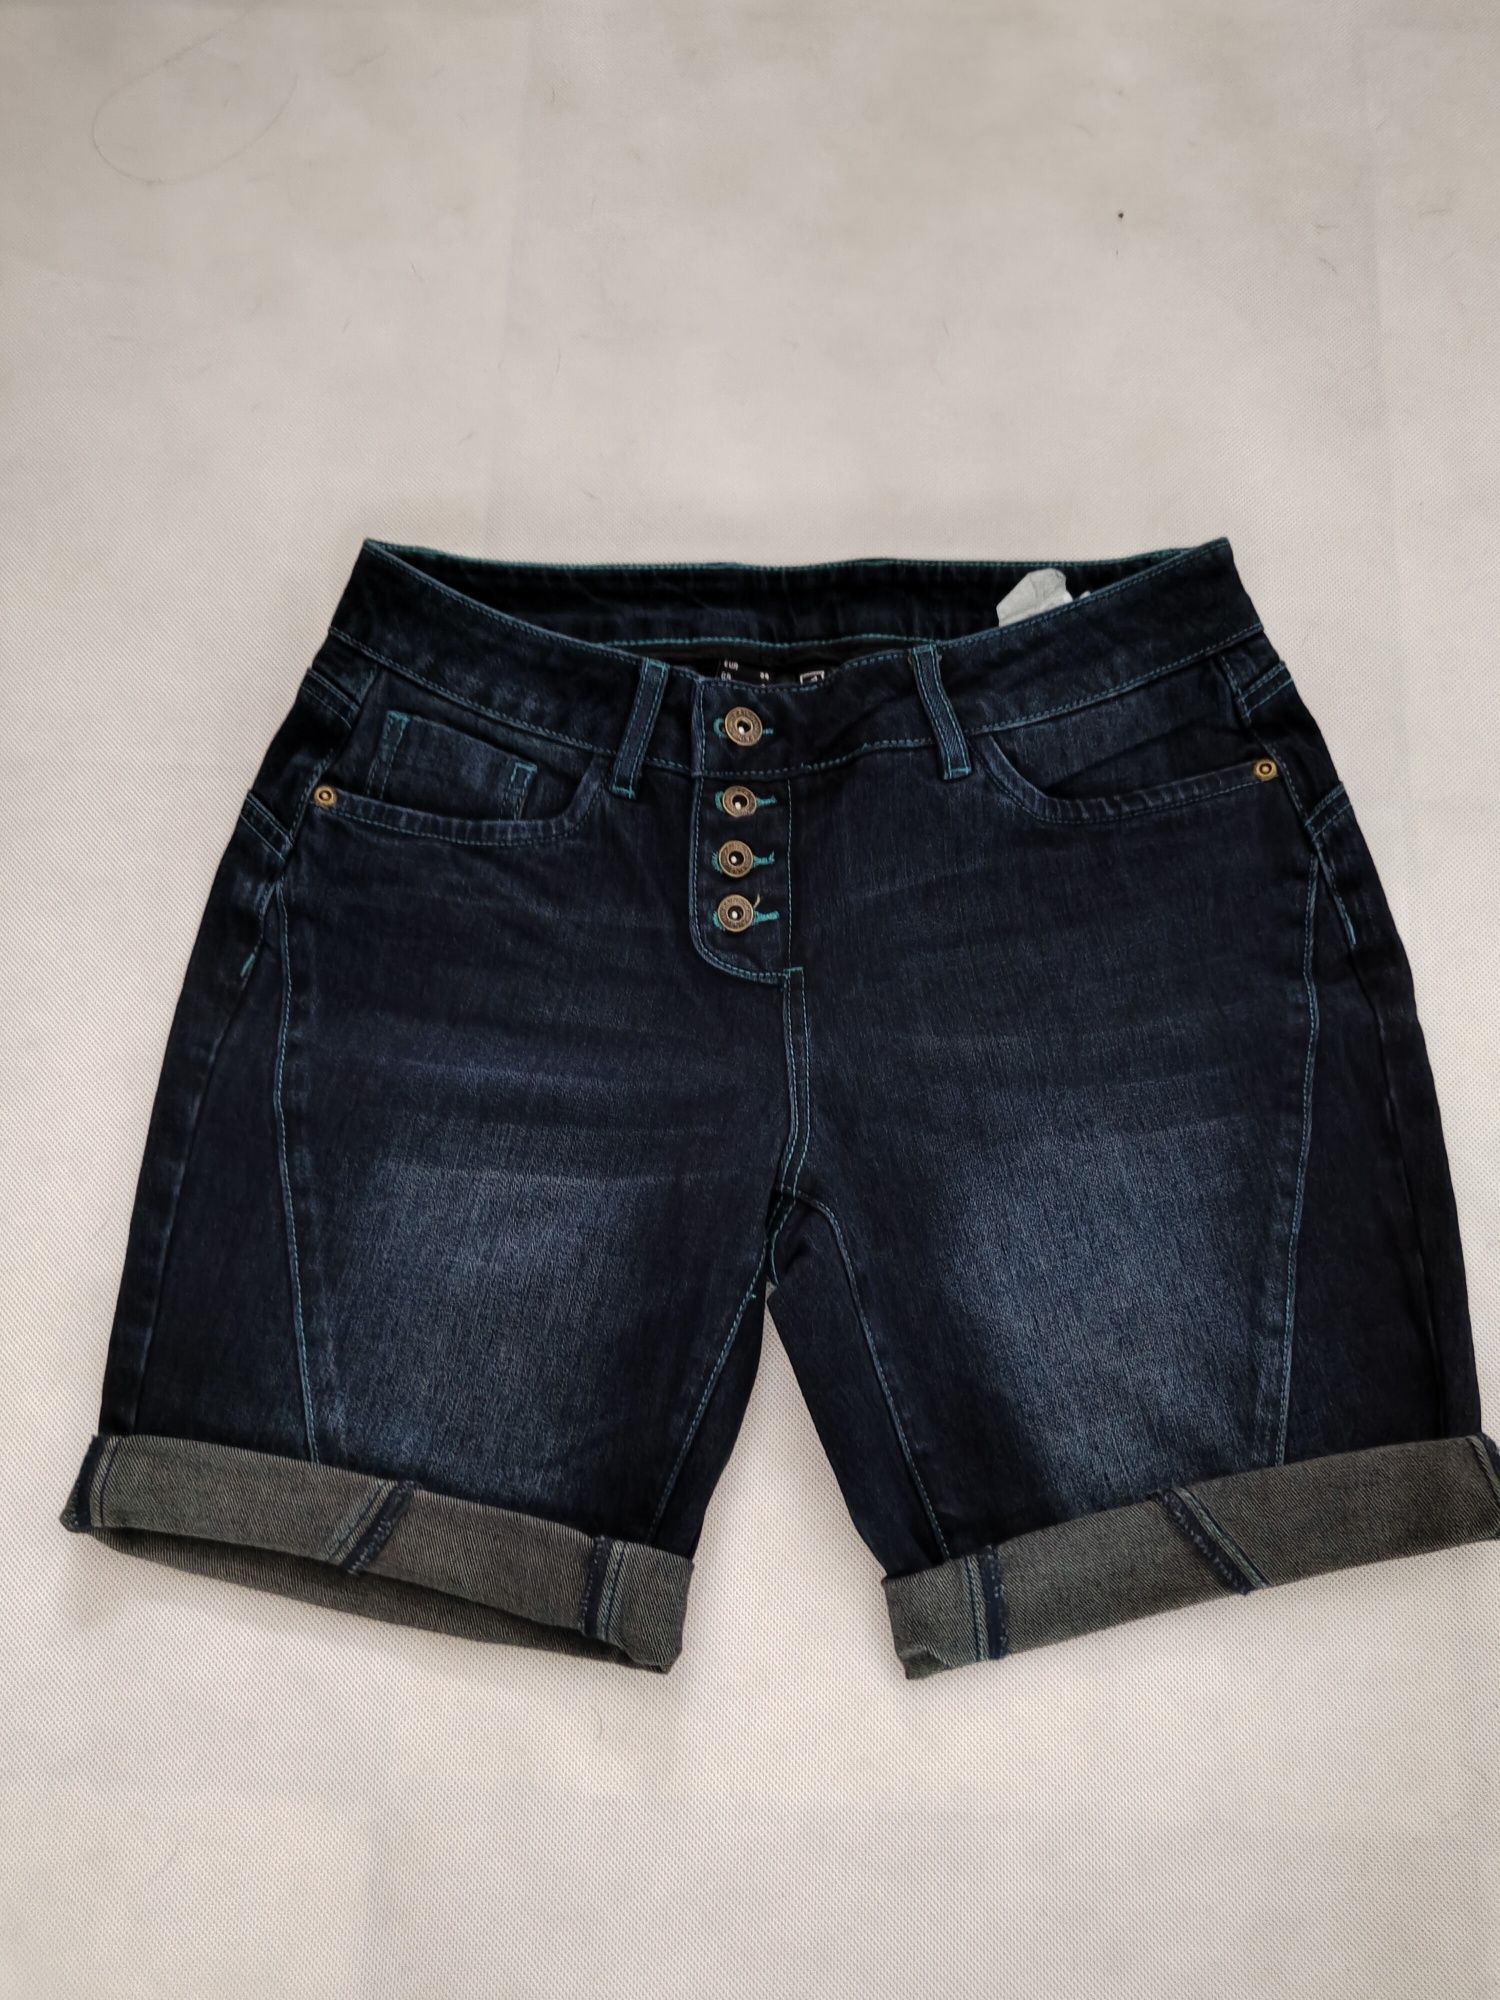 Damskie krótkie spodenki jeansowe bermudy